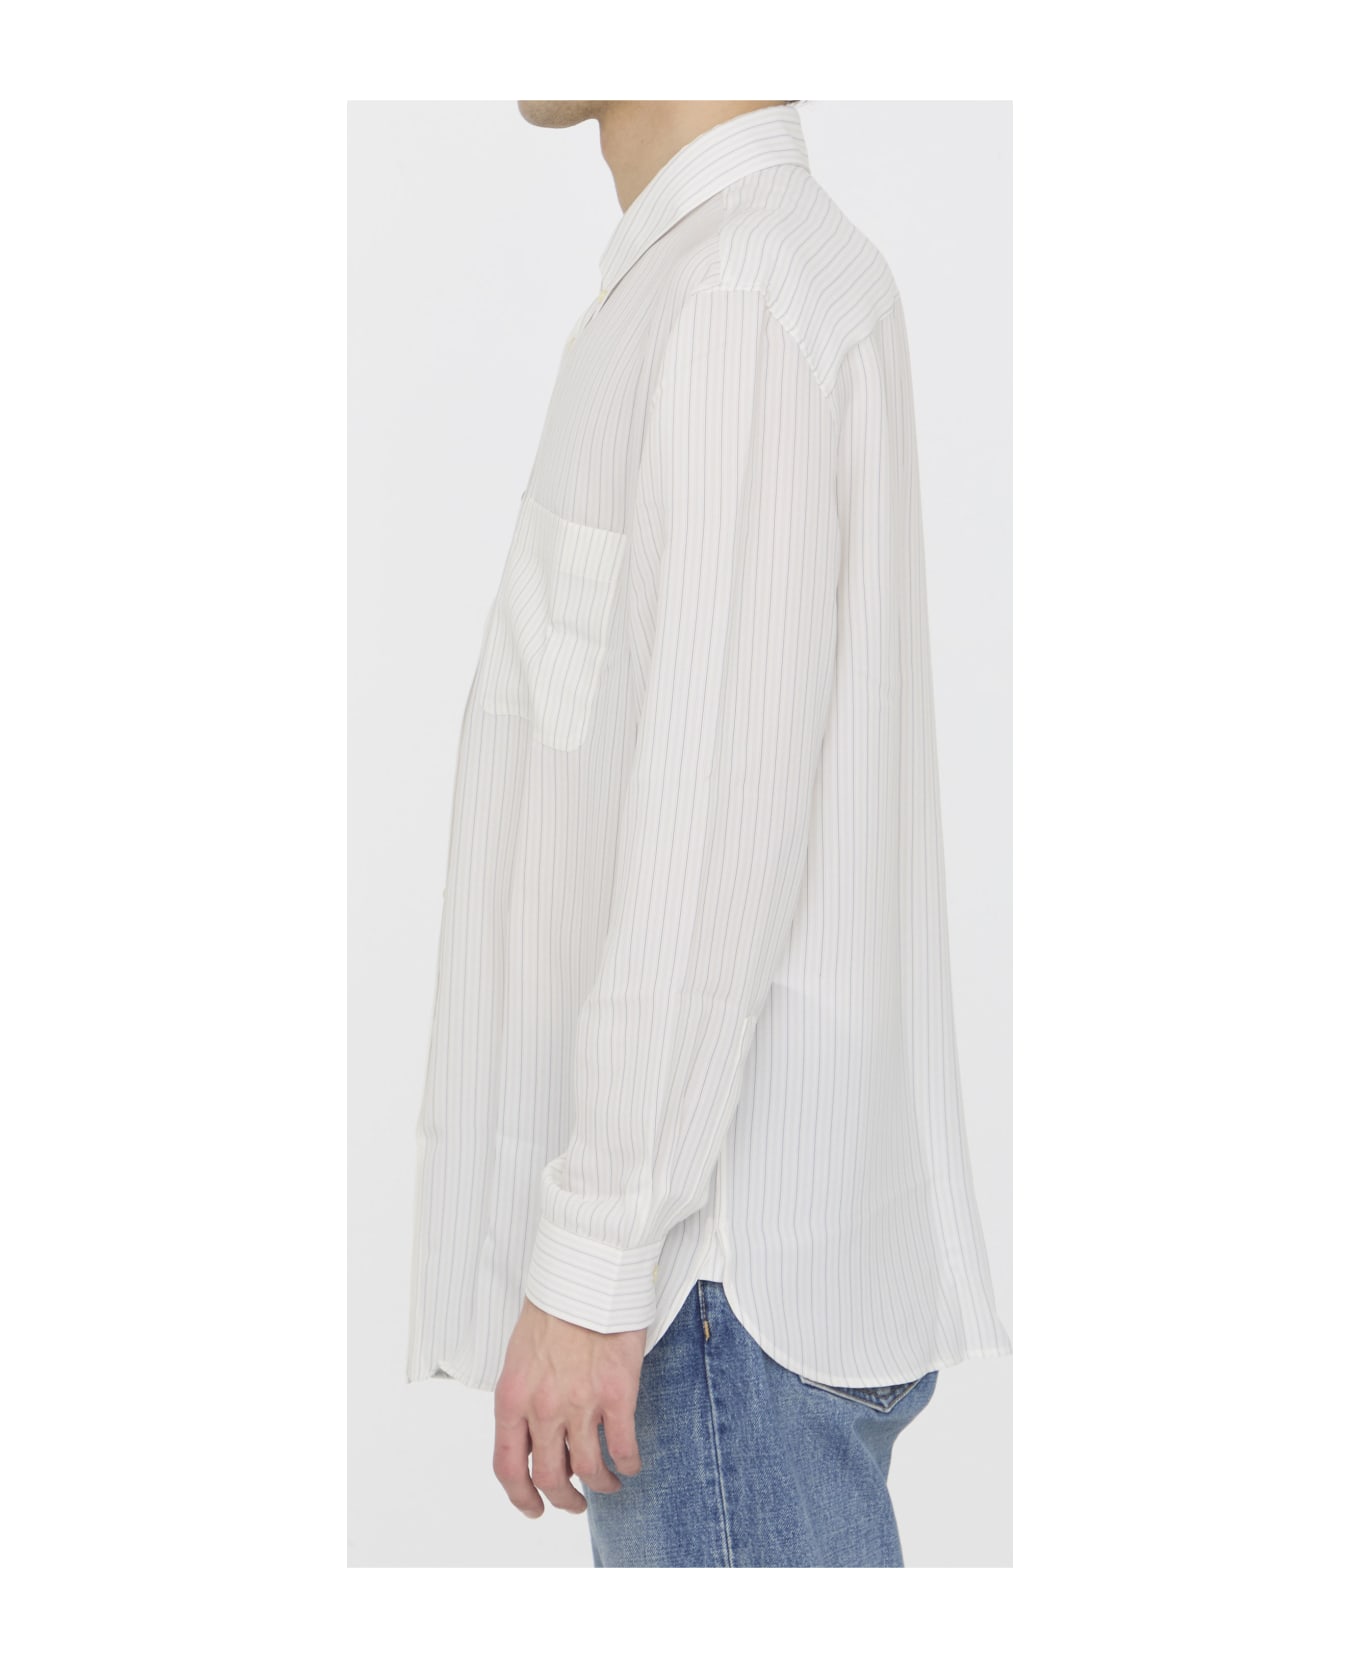 Saint Laurent Cassandre Shirt - BEIGE GRIS NOIR シャツ